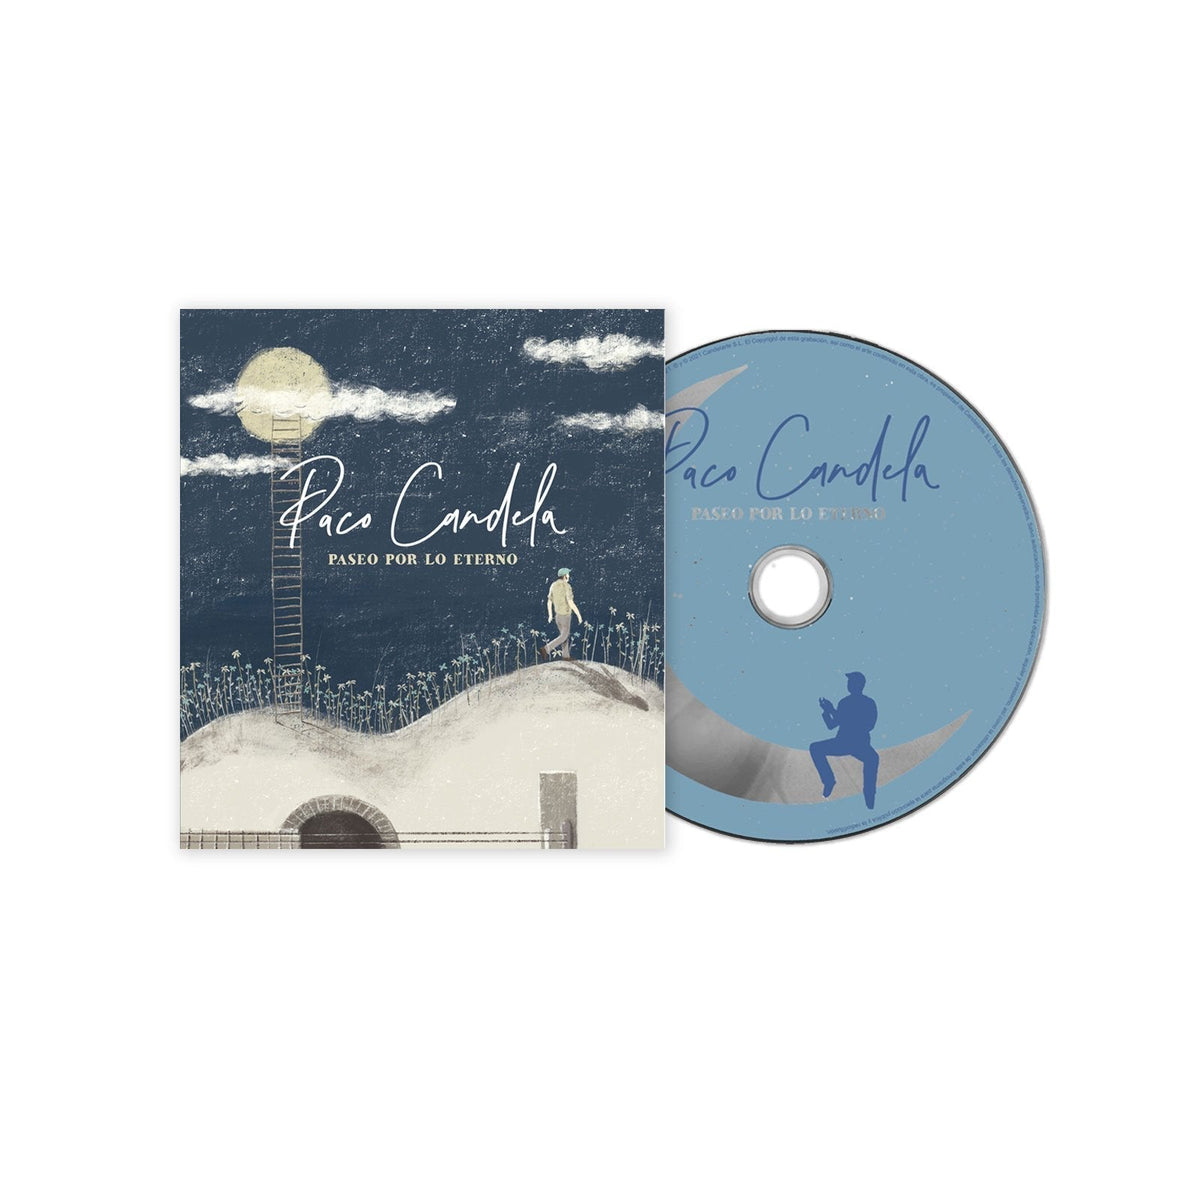 Paco Candela - CD Digifile Deluxe “Paseo Por Lo Eterno” - Rocktud - Paco Candela